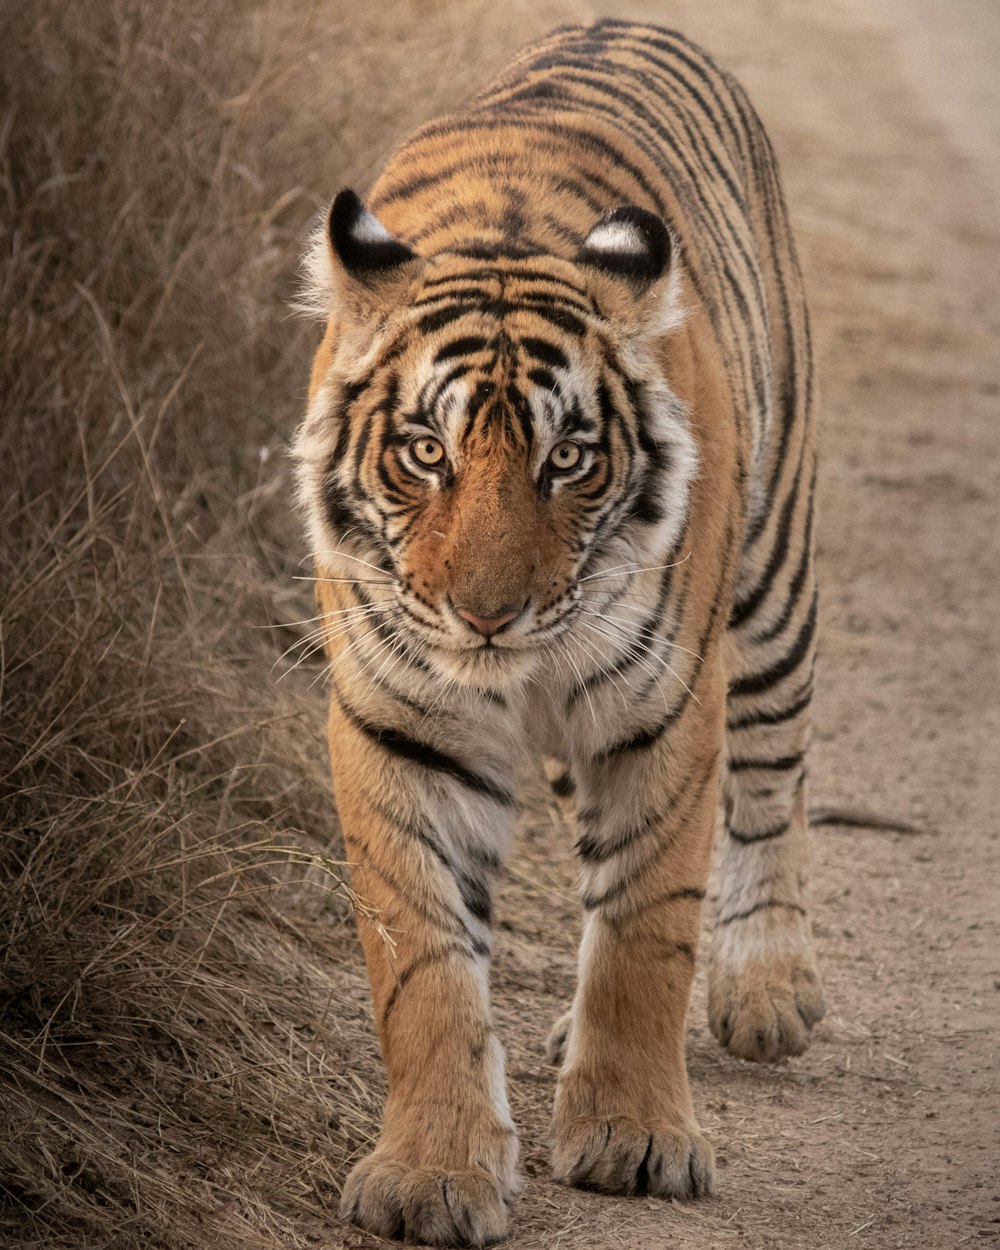 tigre andando na grama marrom